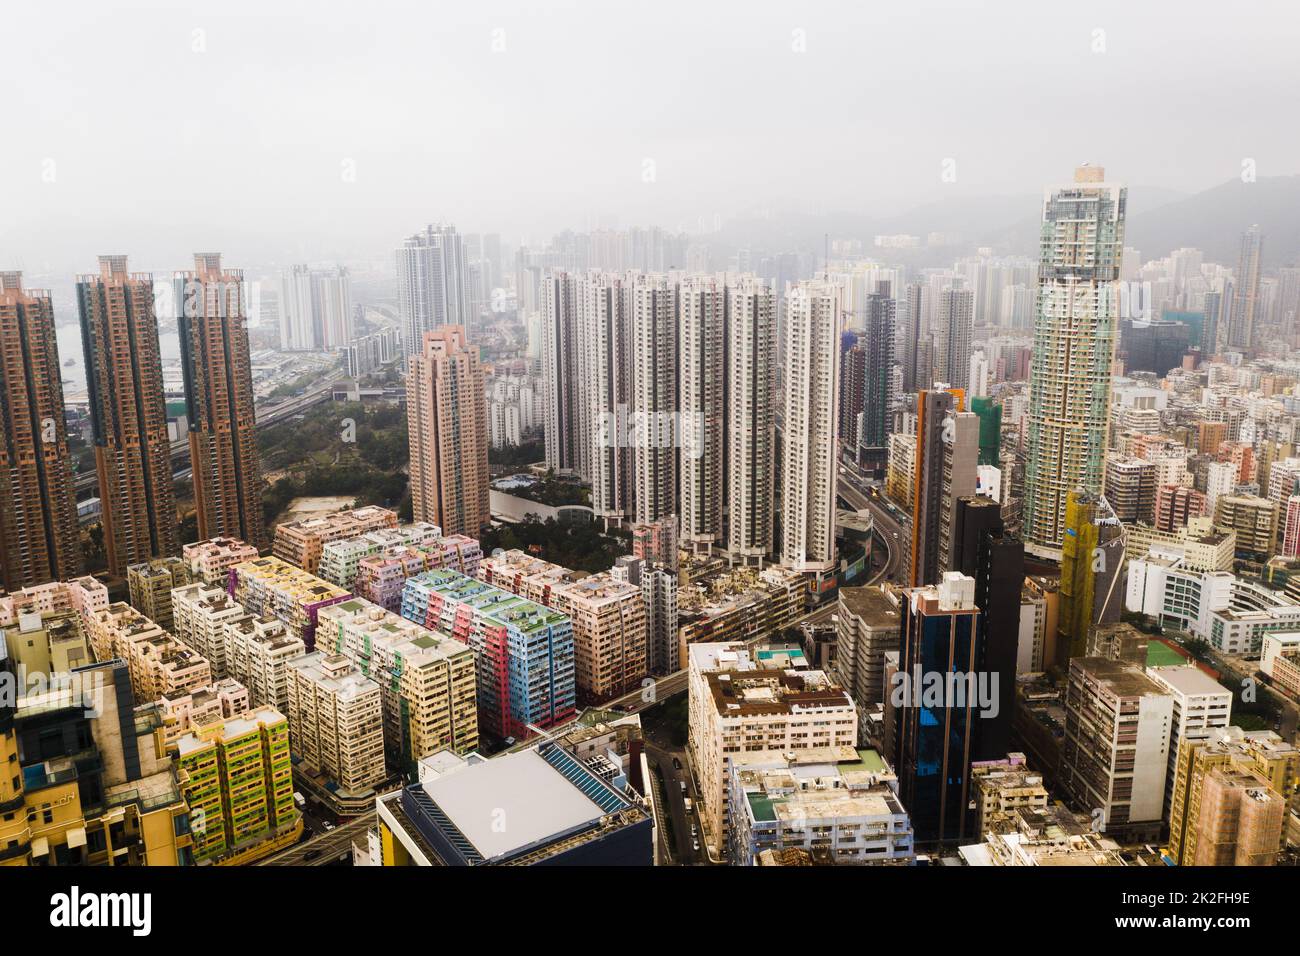 Es ist eine Stadt, die es wert ist zu erkunden. Aufnahme von Wolkenkratzern, Bürogebäuden und anderen Geschäftsgebäuden in der urbanen Metropole Hongkong. Stockfoto